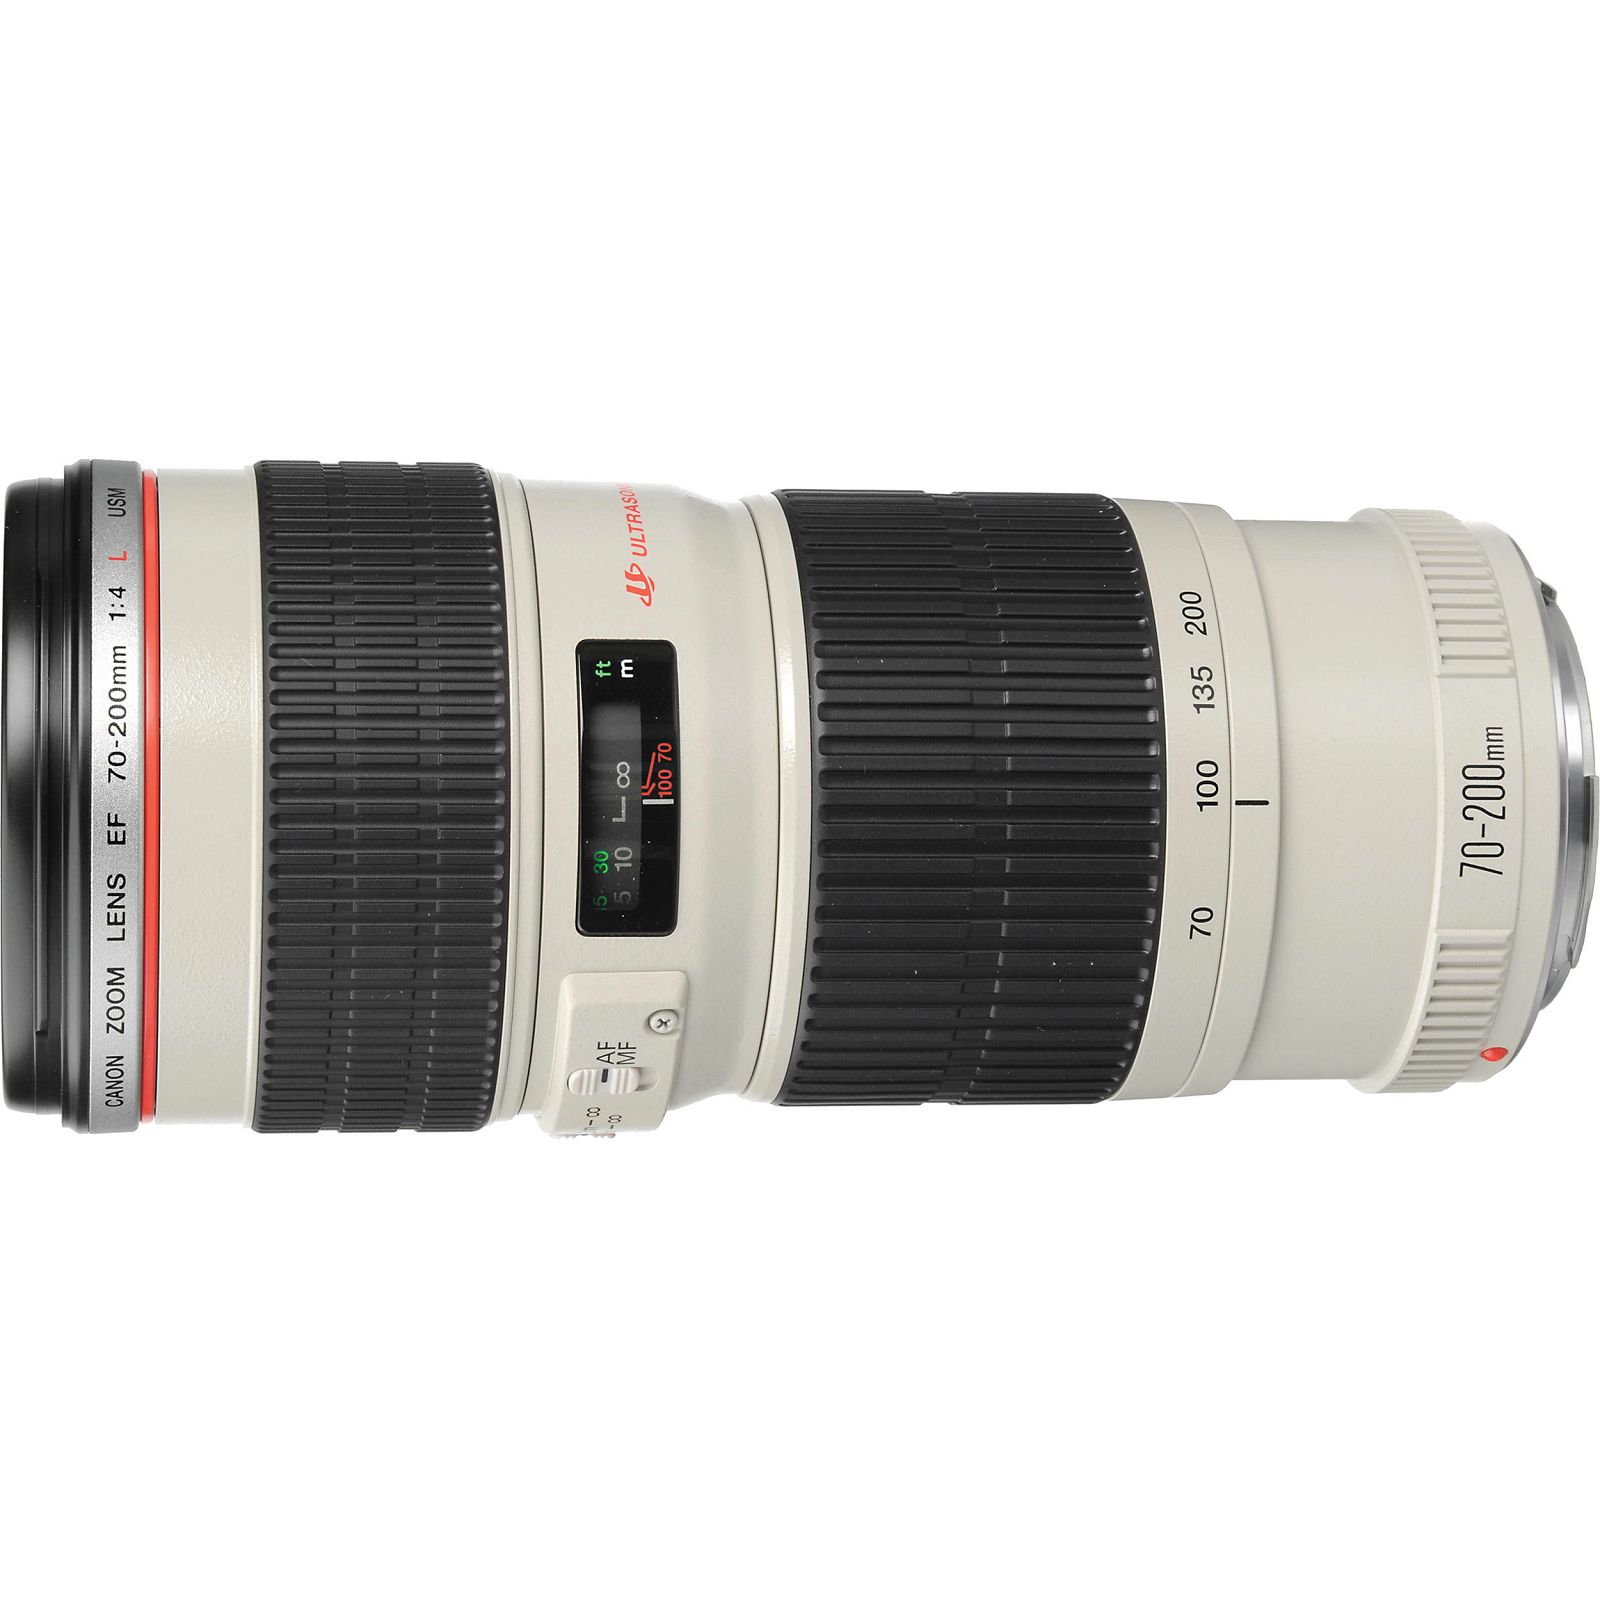 Canon EF 70-200mm f/4 L USM telefoto objektiv zoom lens 70-200 F4 4.0 1:4,0L f/4L F/4.0 (2578A009AA)